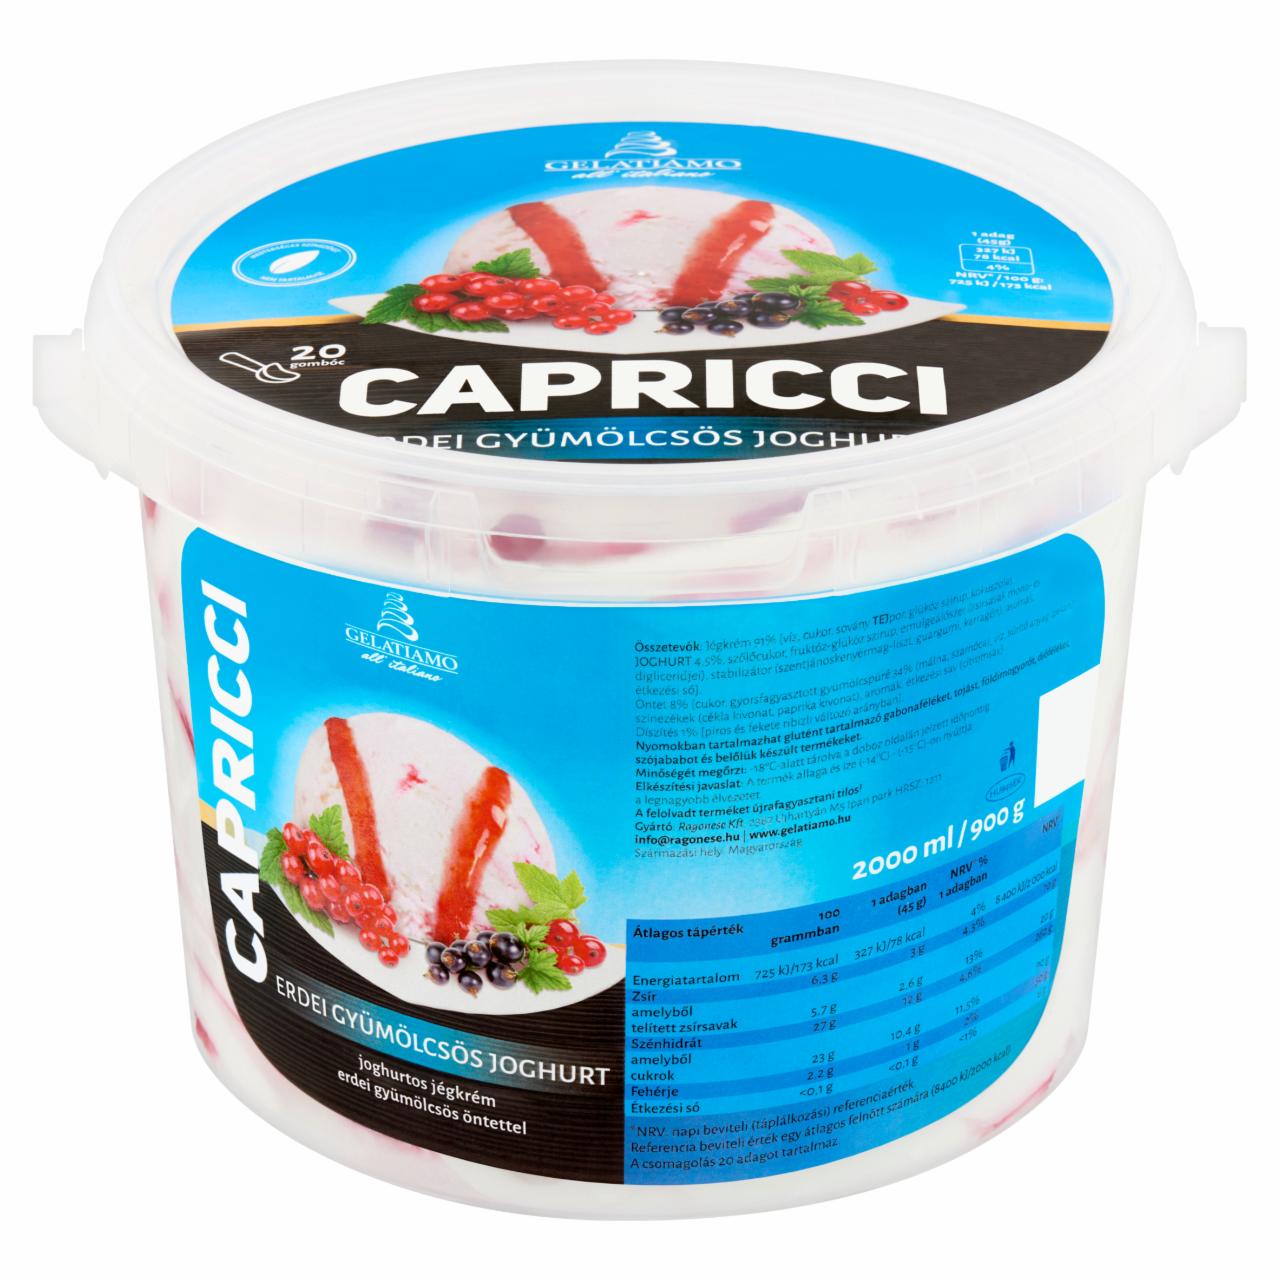 Képek - Gelatiamo Capricci joghurtos jégkrém erdei gyümölcsös öntettel 2000 ml